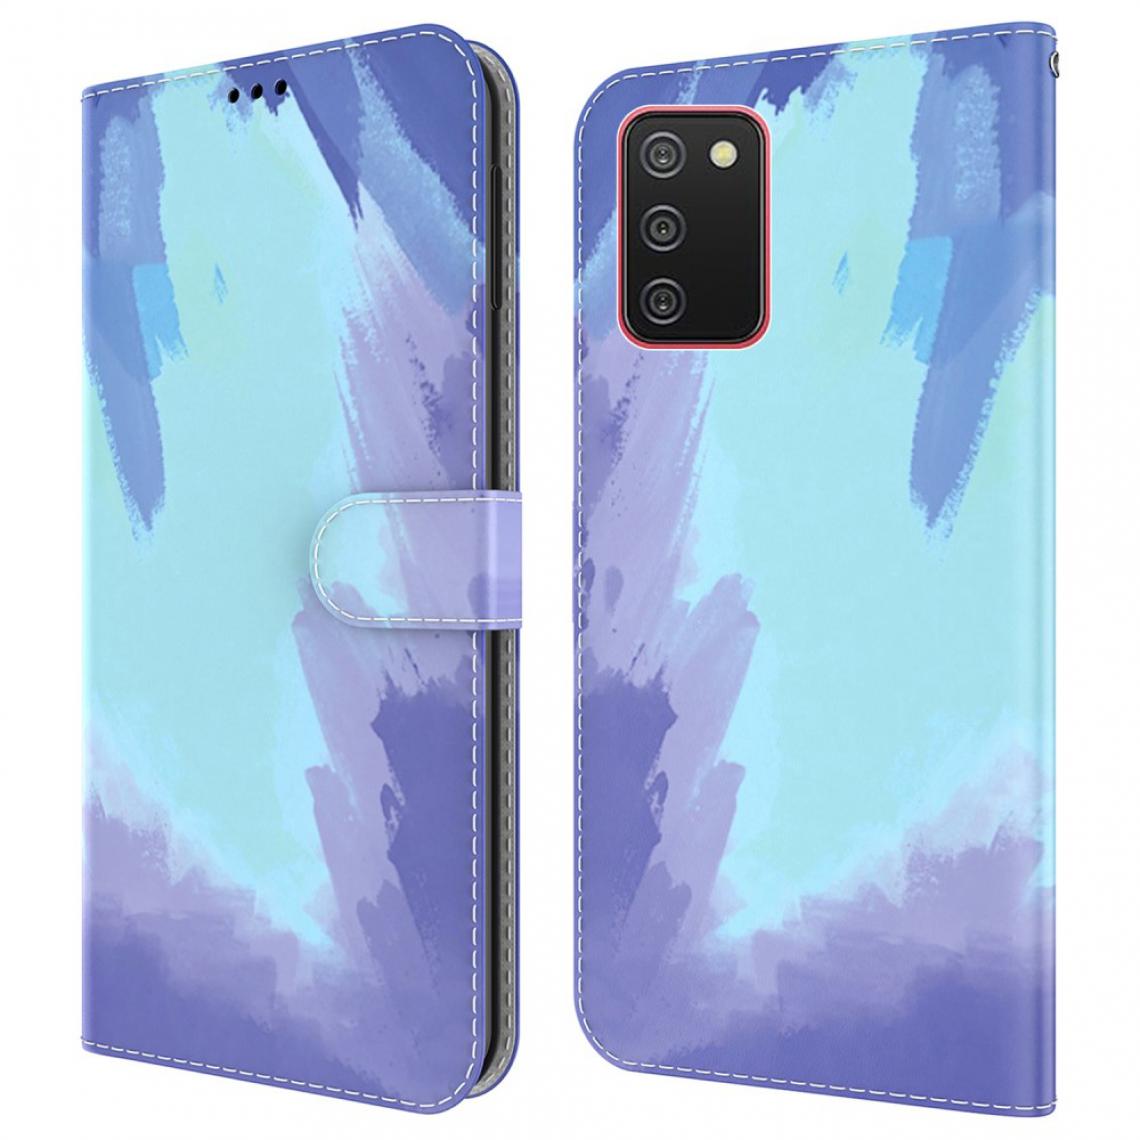 Other - Etui en PU Aquarelle élégante (166,5 x 75,9 x 9,2 mm) avec support Neige de l'hiver pour votre Samsung Galaxy A02s - Coque, étui smartphone